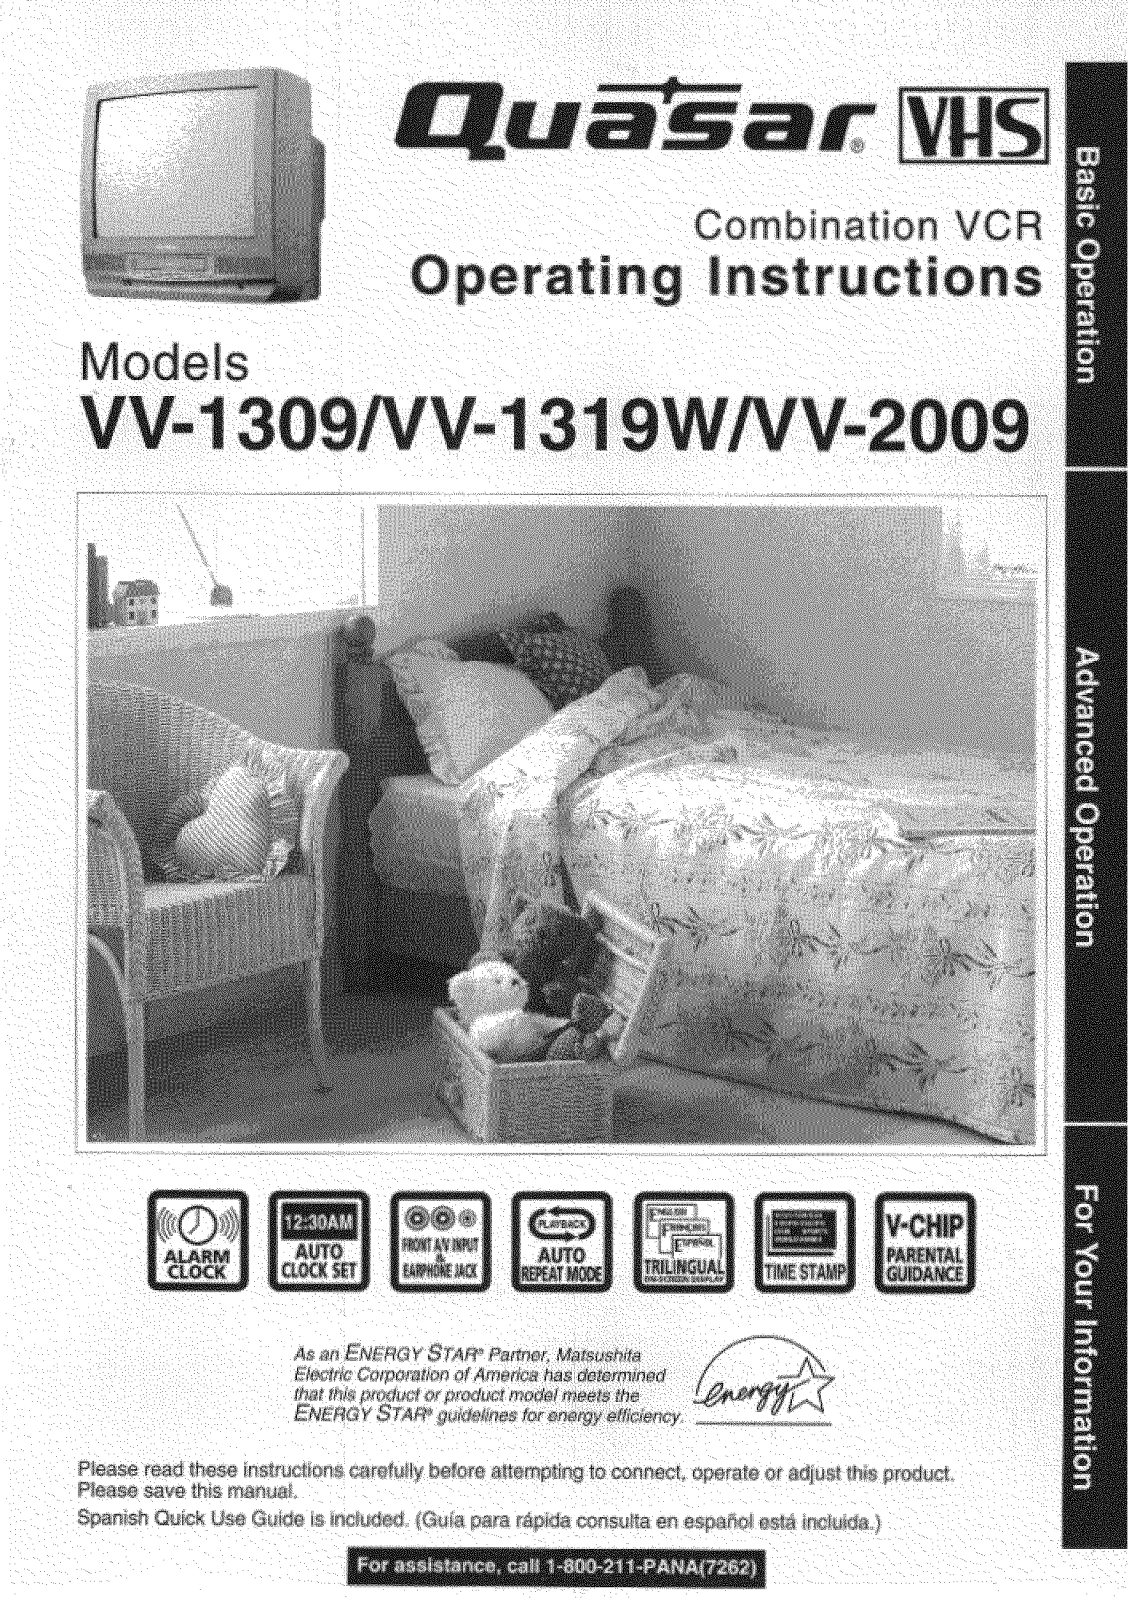 Panasonic VV-2009, VV-1319W, VV-1309 Owner’s Manual